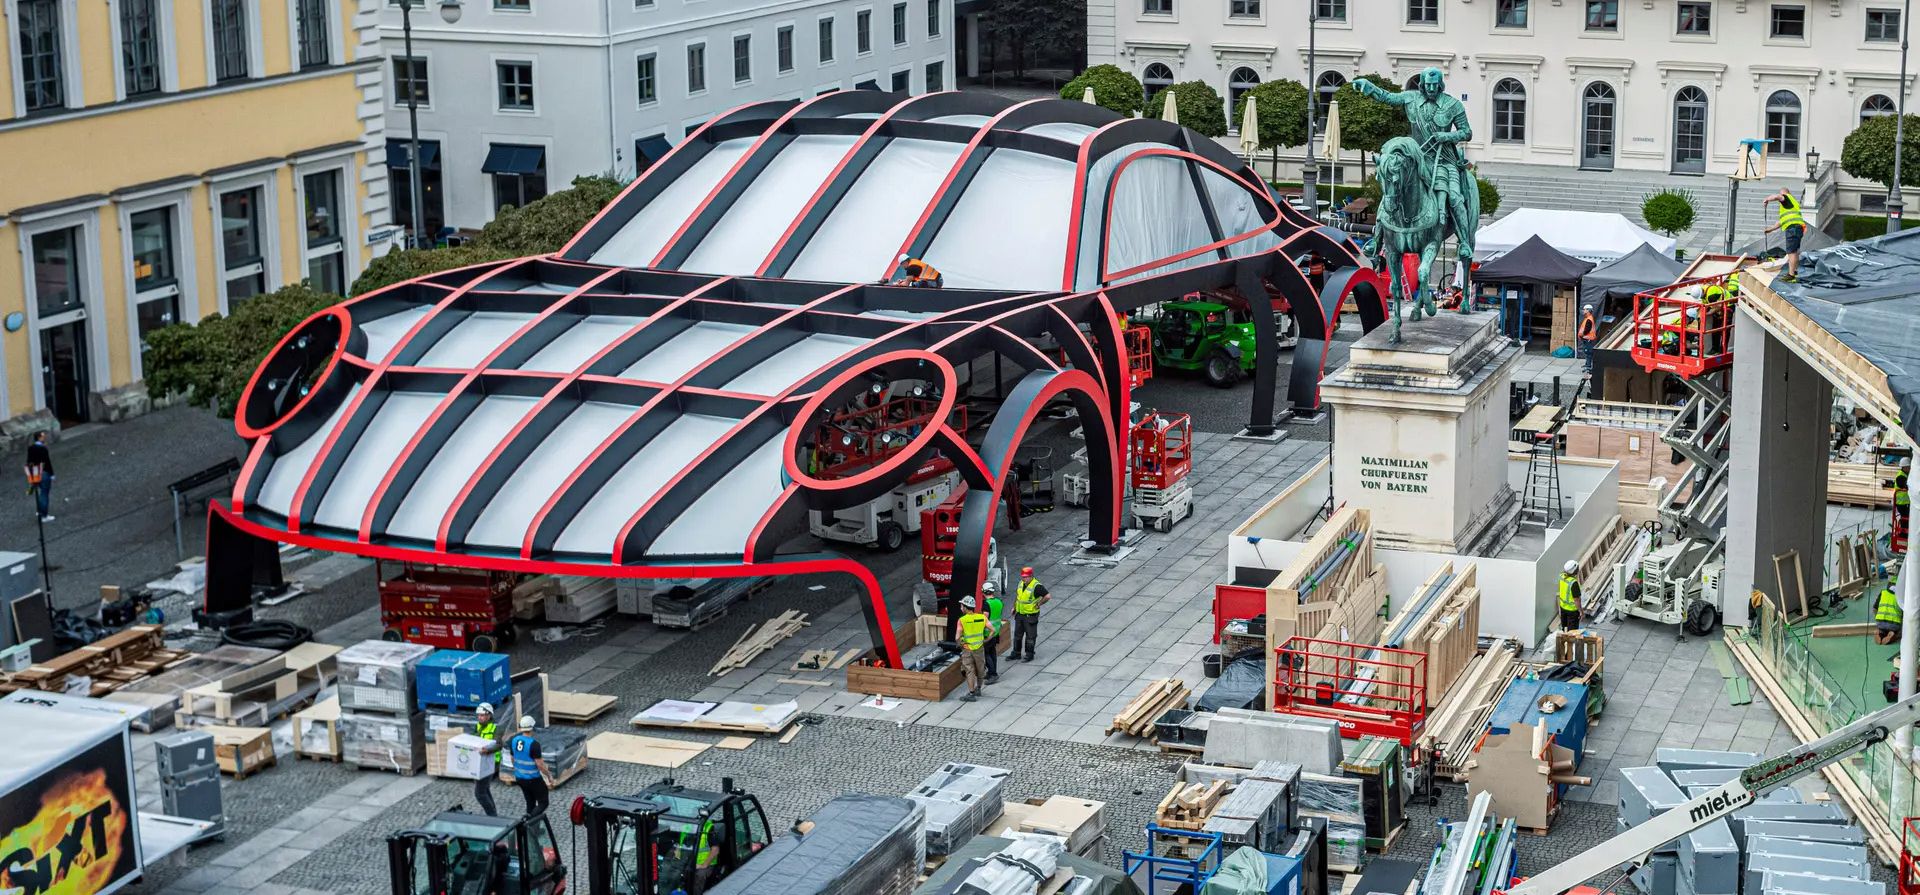 Un modelo de un Porsche gigante se encuentra en Wittelsbacherplatz en el centro de la ciudad. La plaza se utilizará para la exposición IAA Mobility en la capital bávara, Múnich, Alemania. Fotografía: Martin Schulz/AP